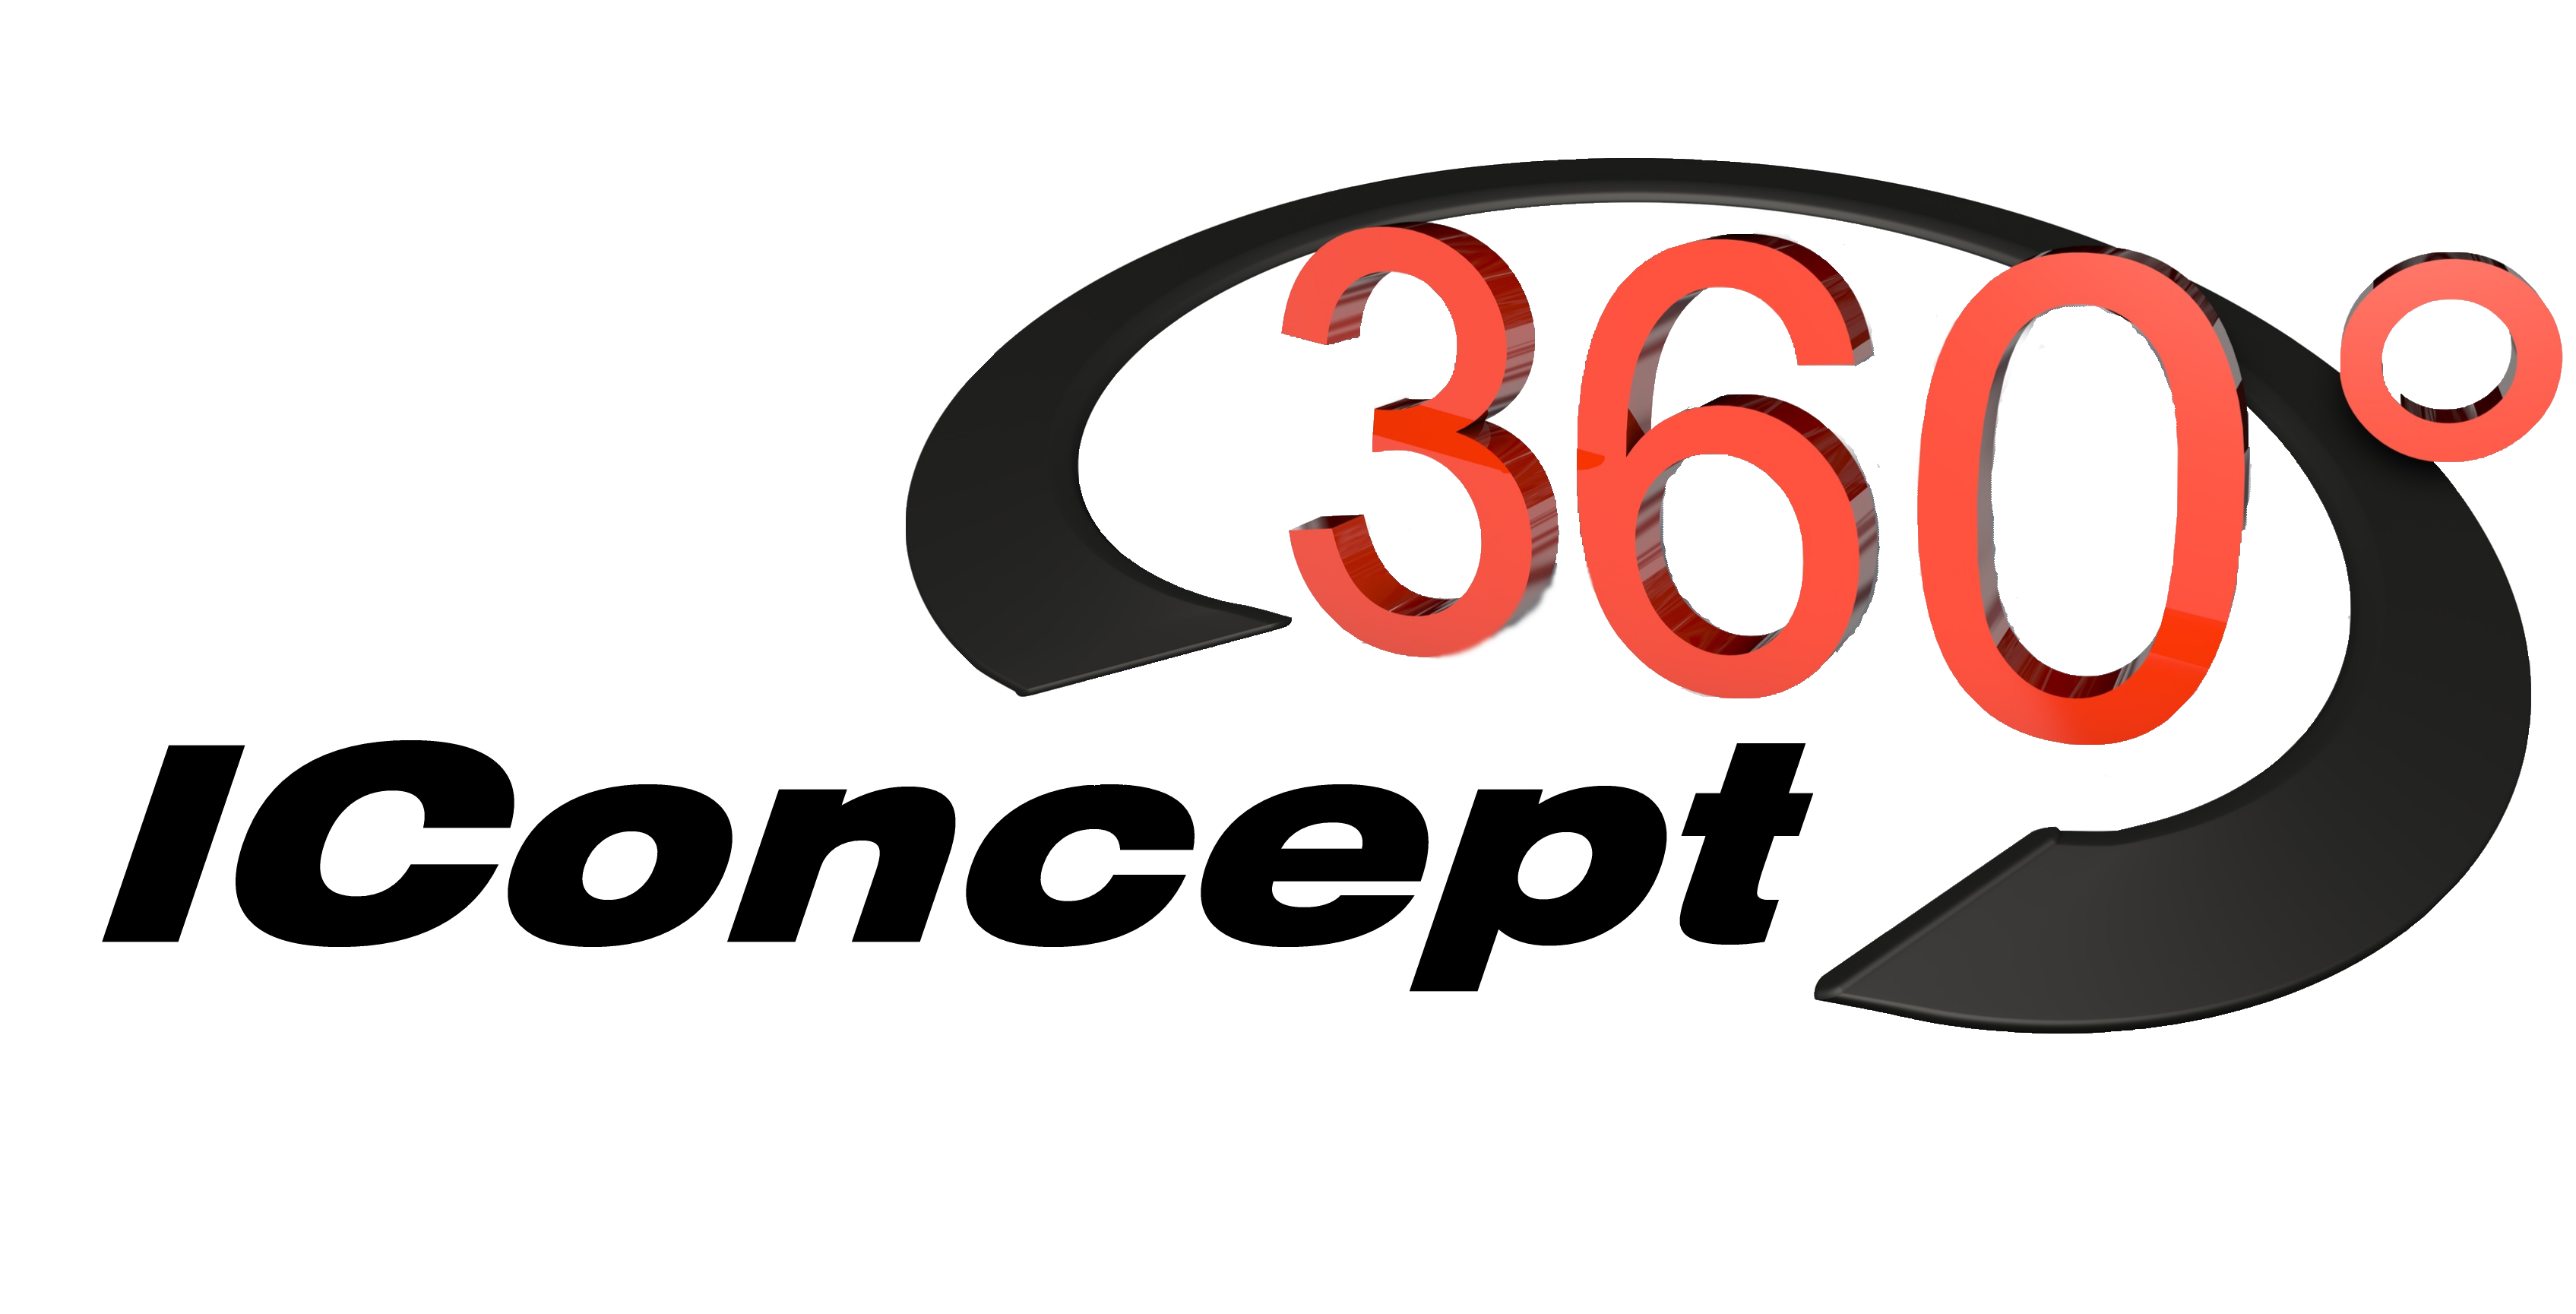 Iconcept360